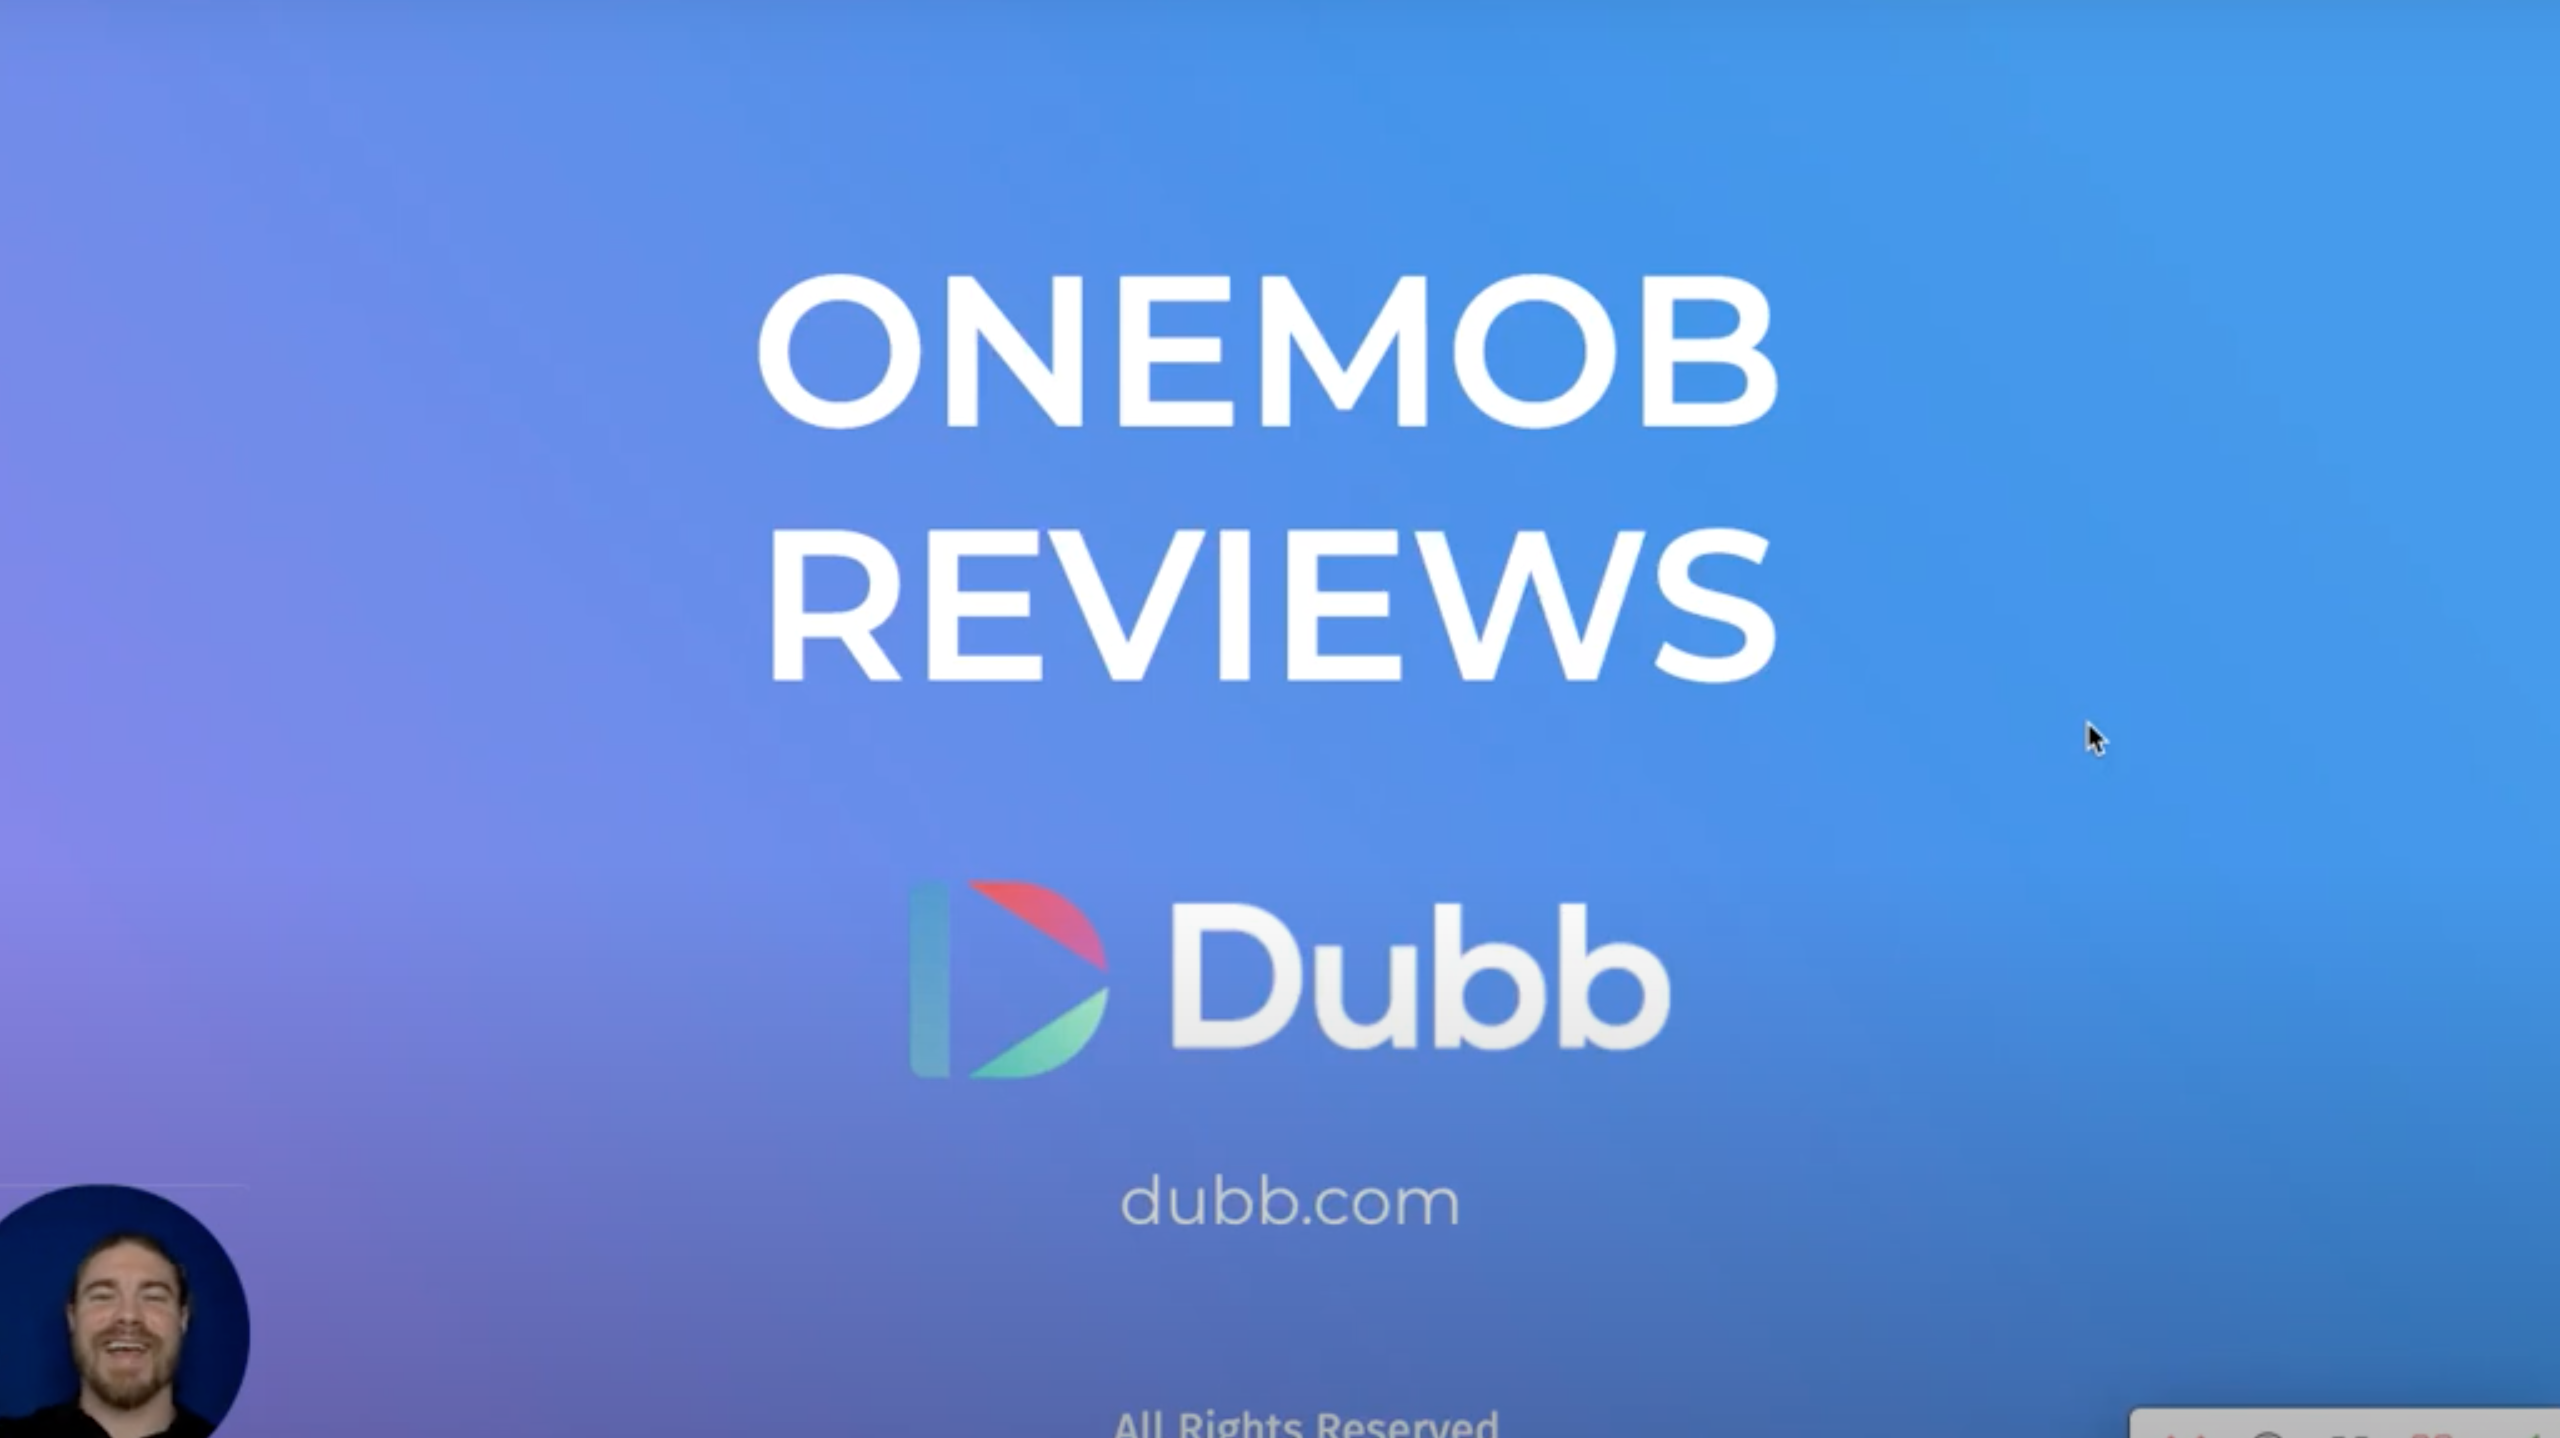 Onemob Reviews vs Dubb Reviews